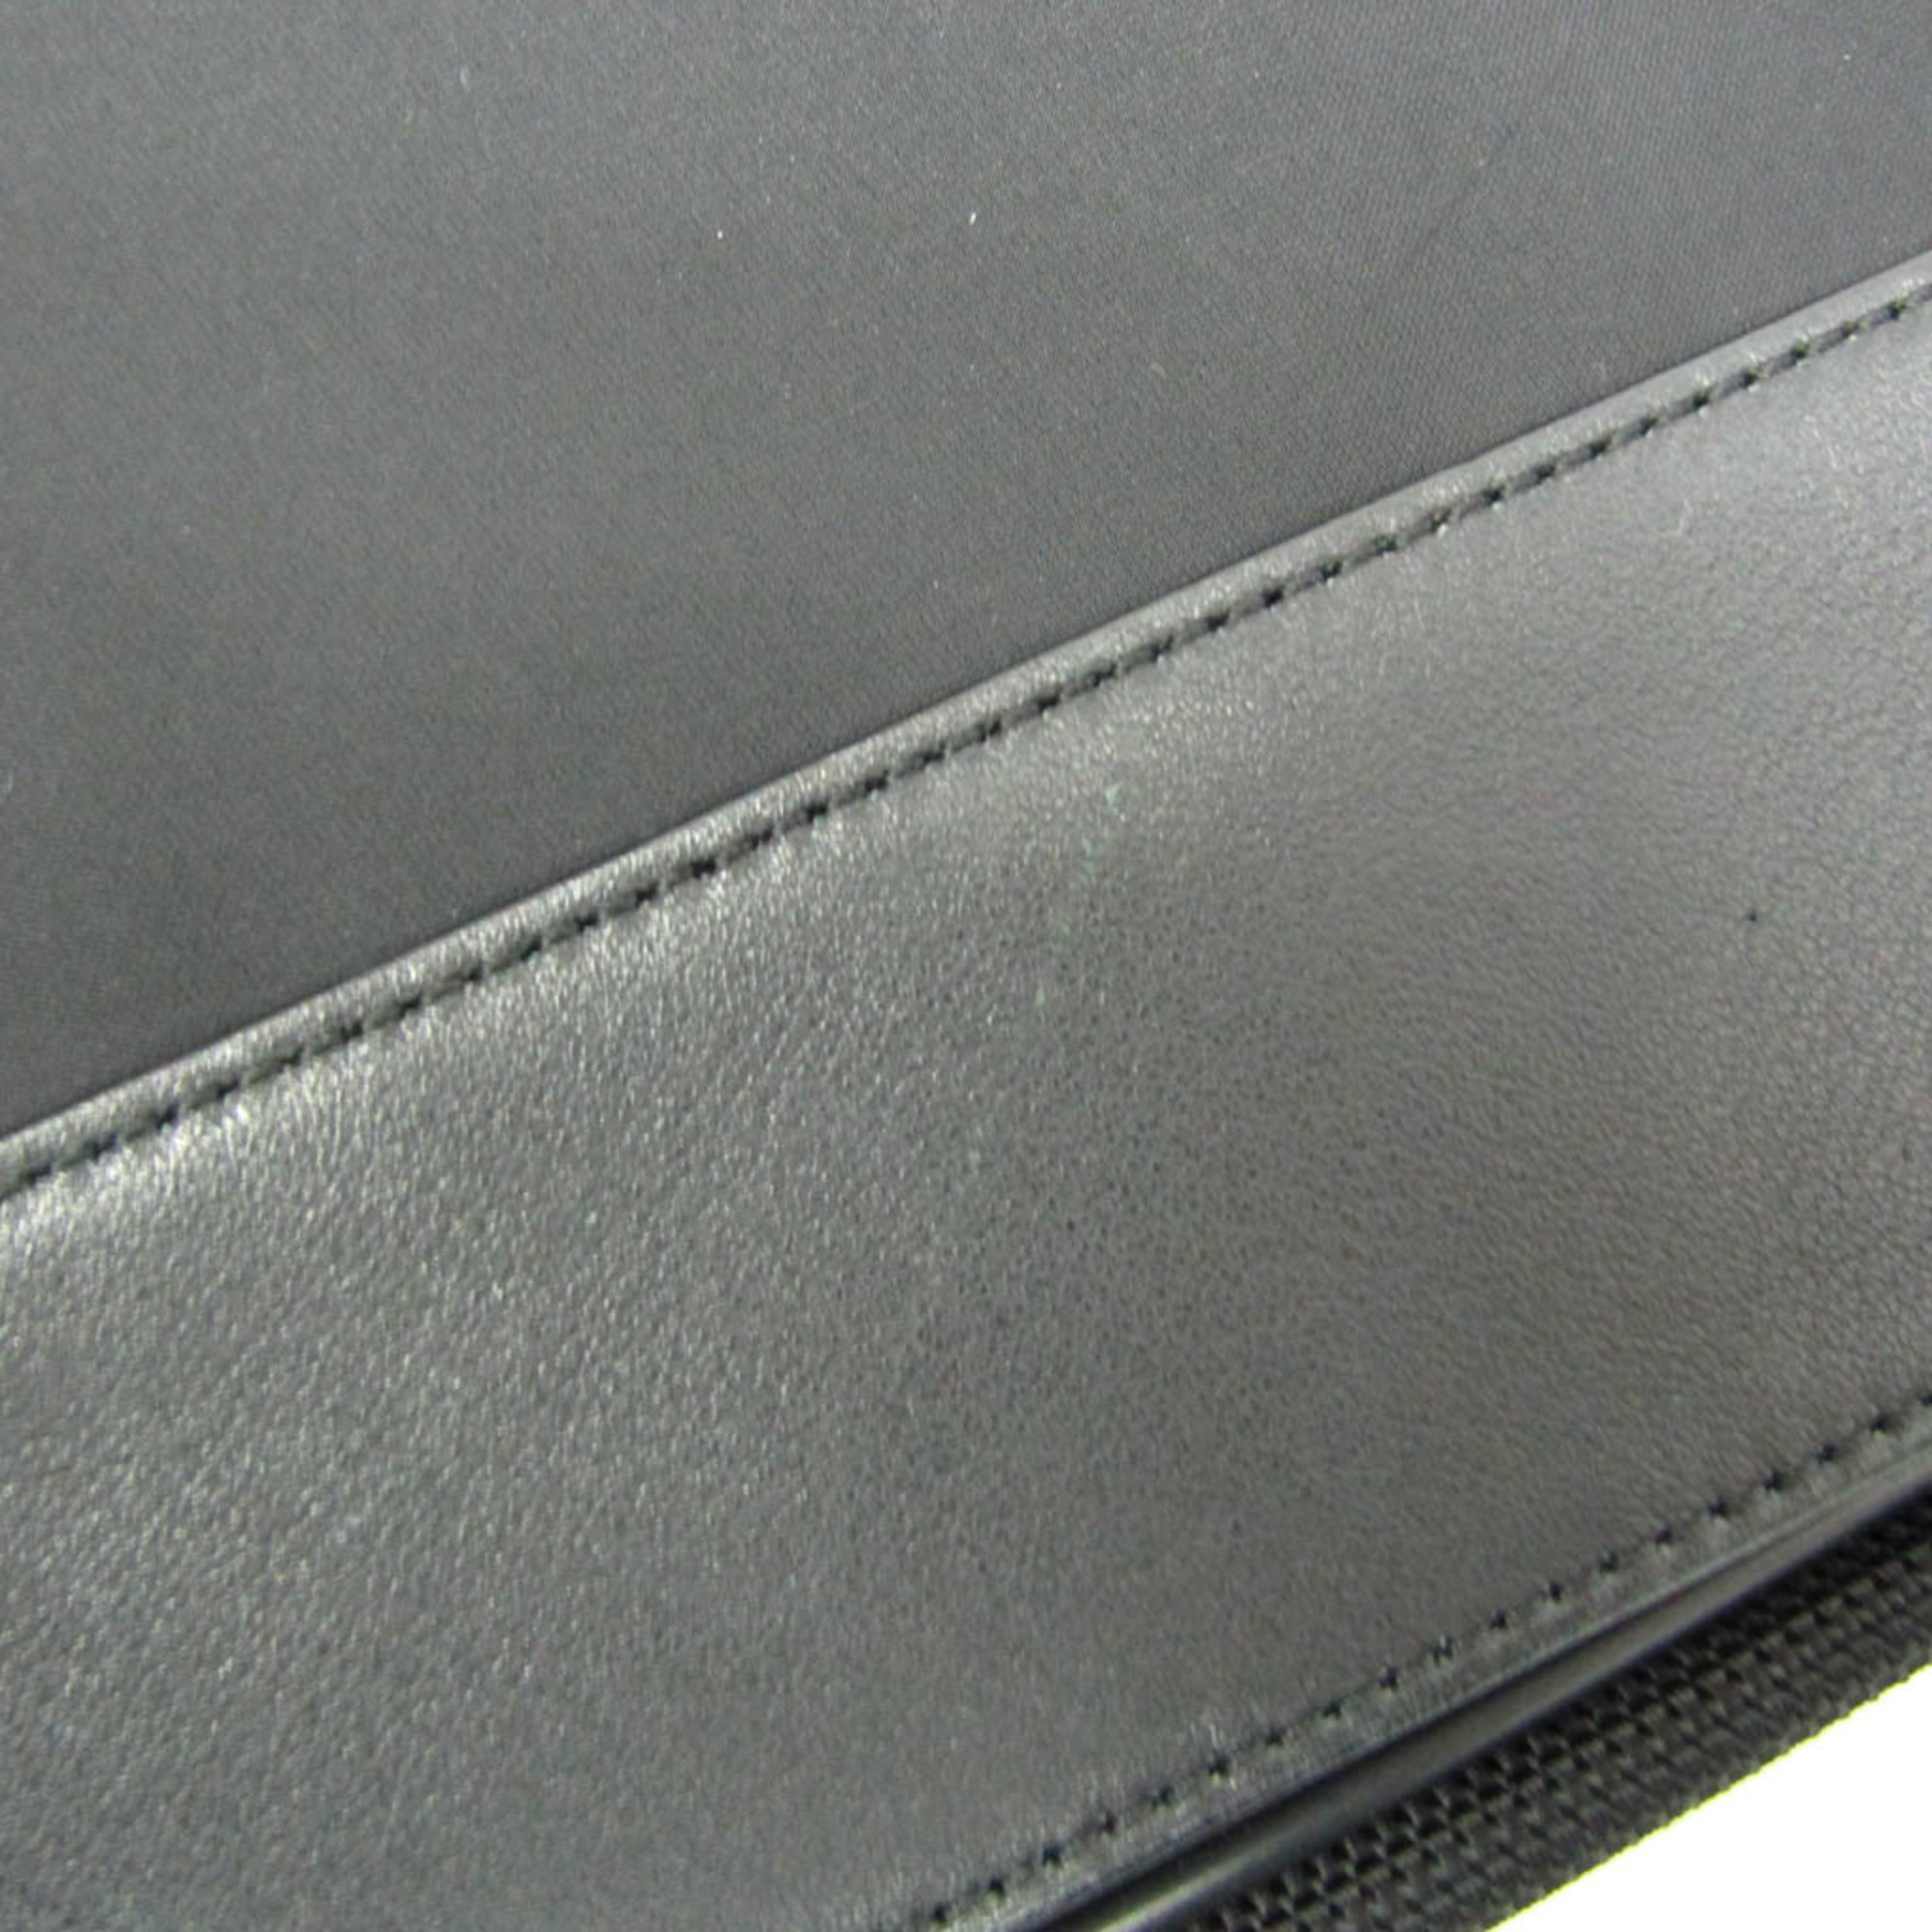 Dunhill L3F65A Men's Leather,Nylon Shoulder Bag Black